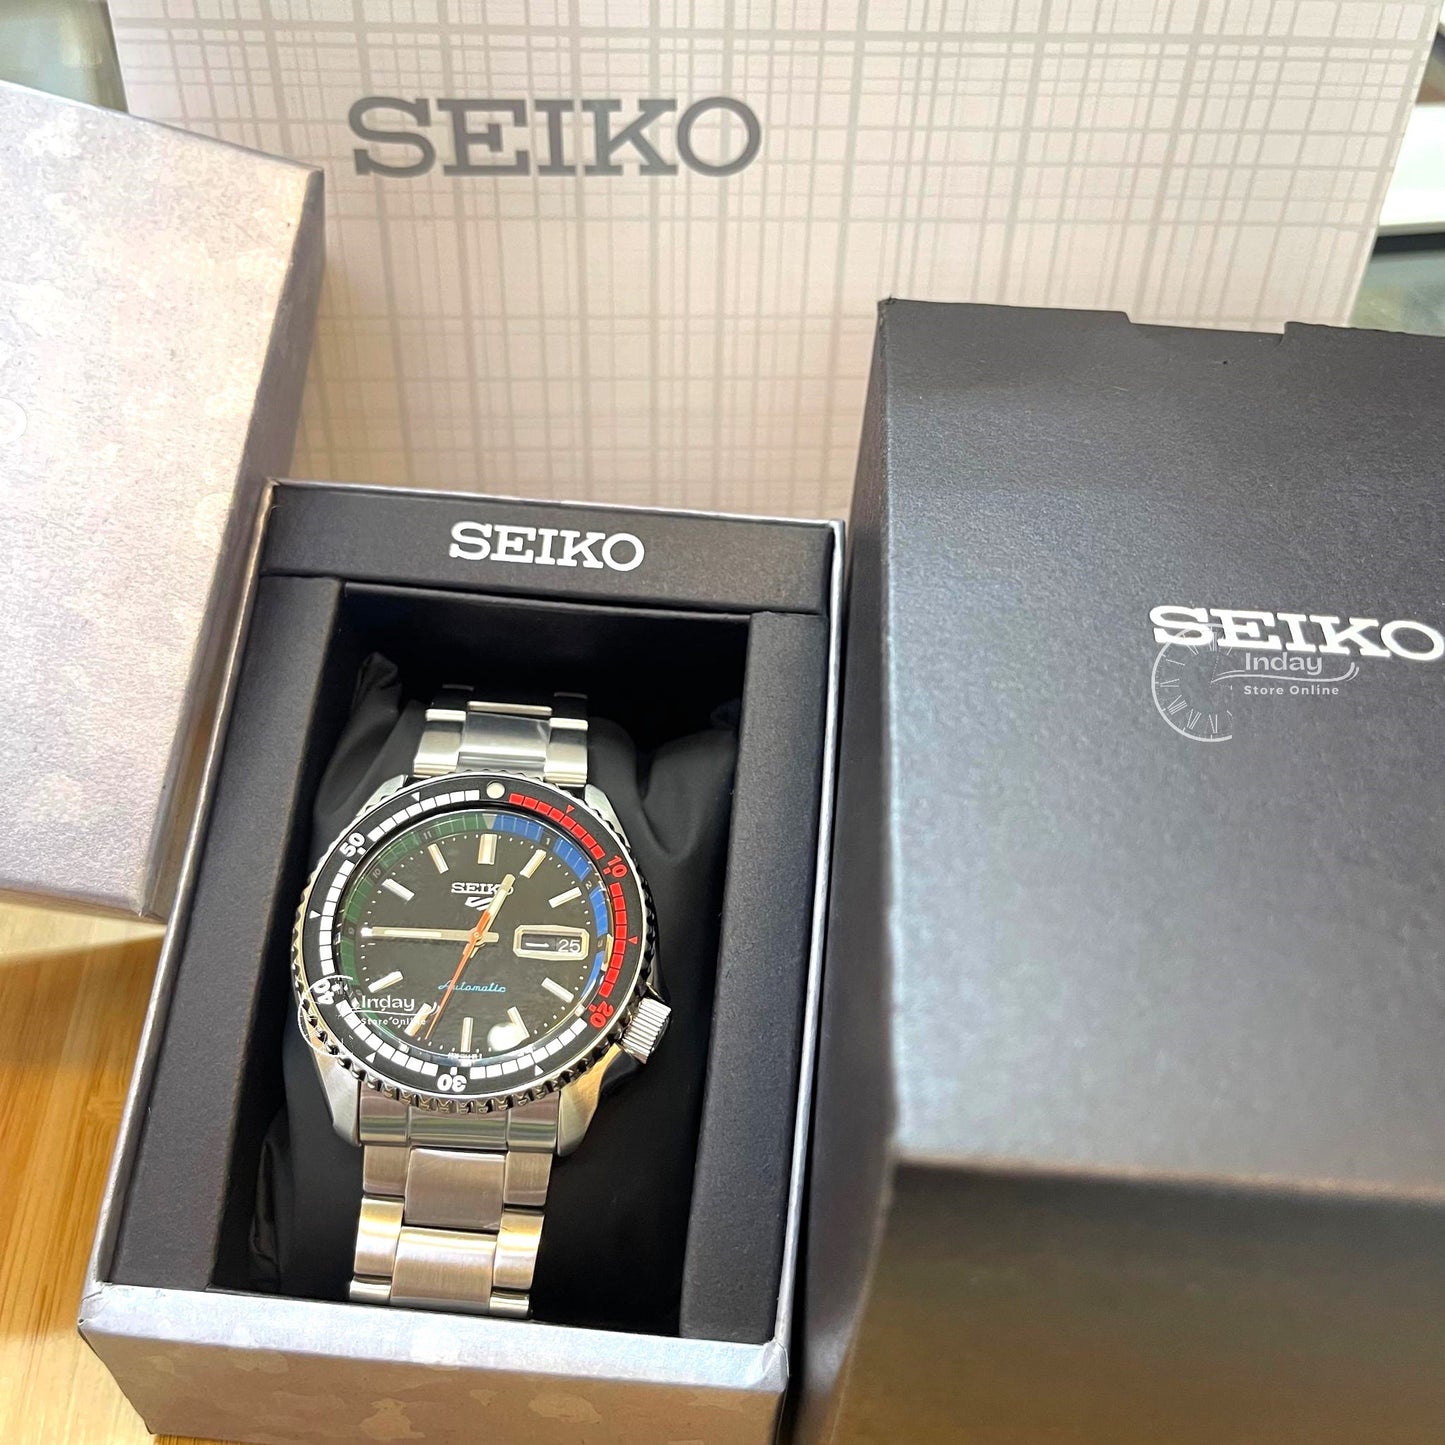 Seiko Automatic Men's Watch SRPK13K1 Seiko 5 Sports